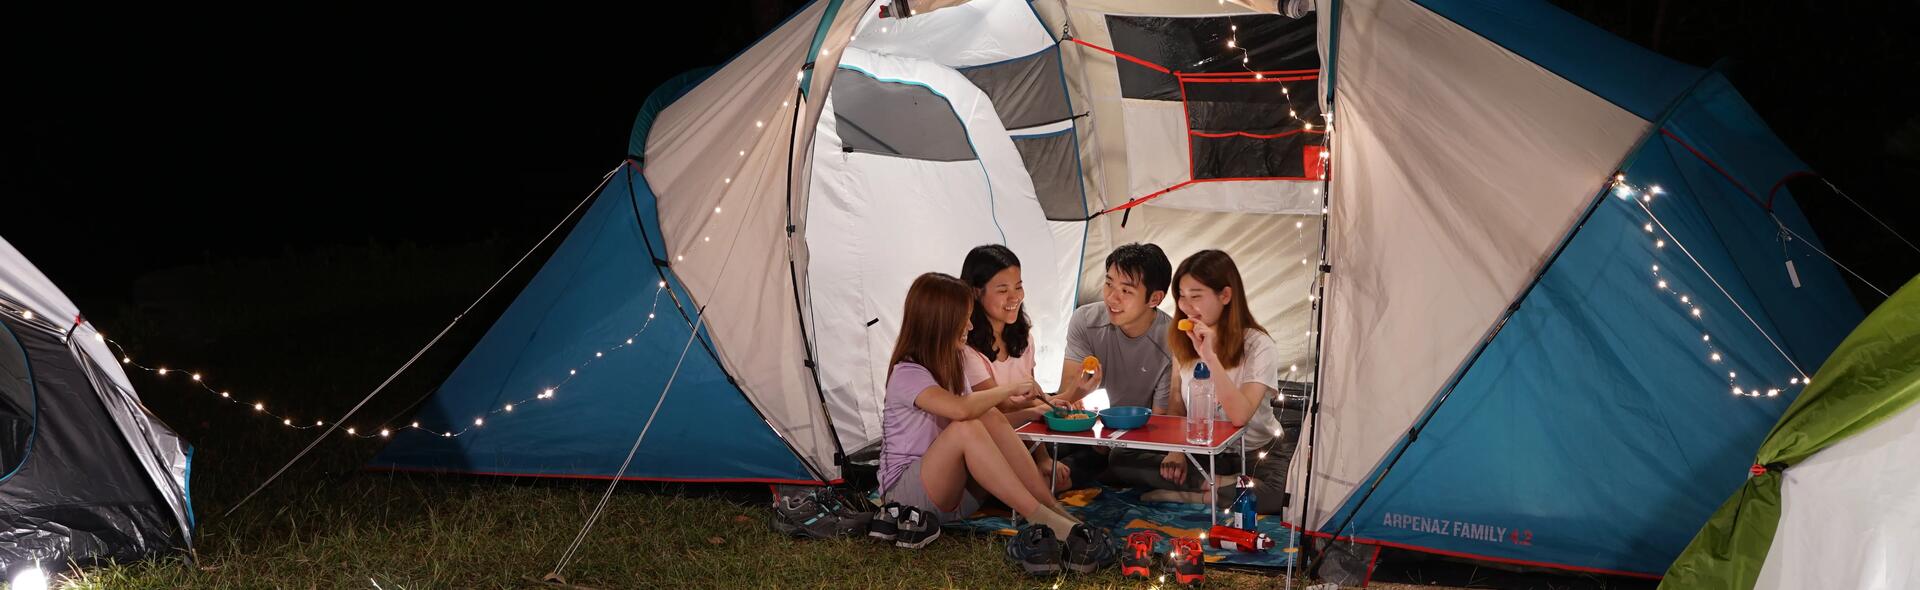 rodzina siedząca wieczorem w namiocie przy stoliku turystycznym